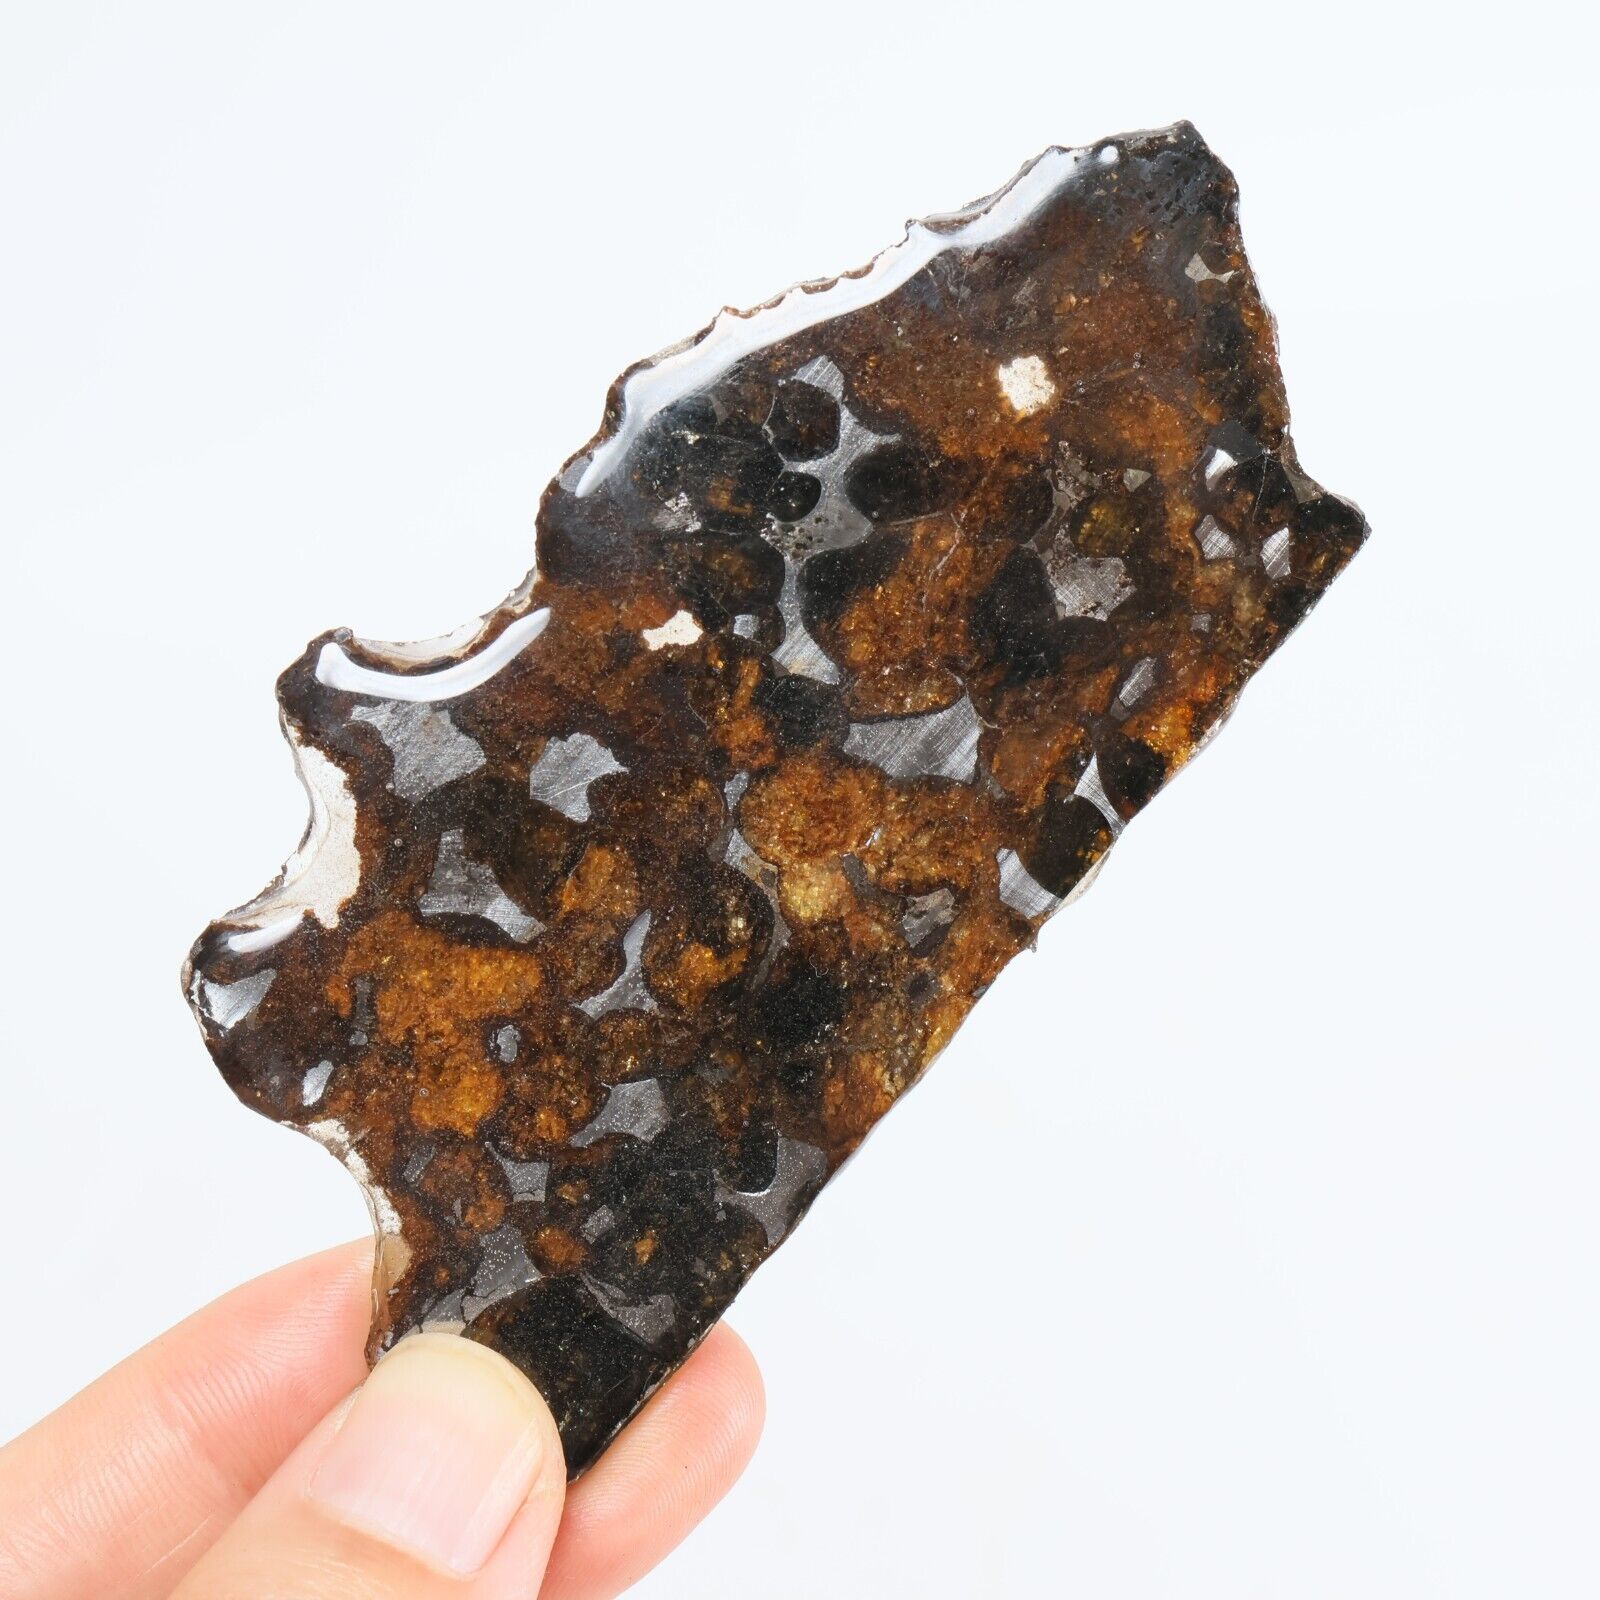 27g Sericho meteorite pallastie meteorite slice from Kenya R1587